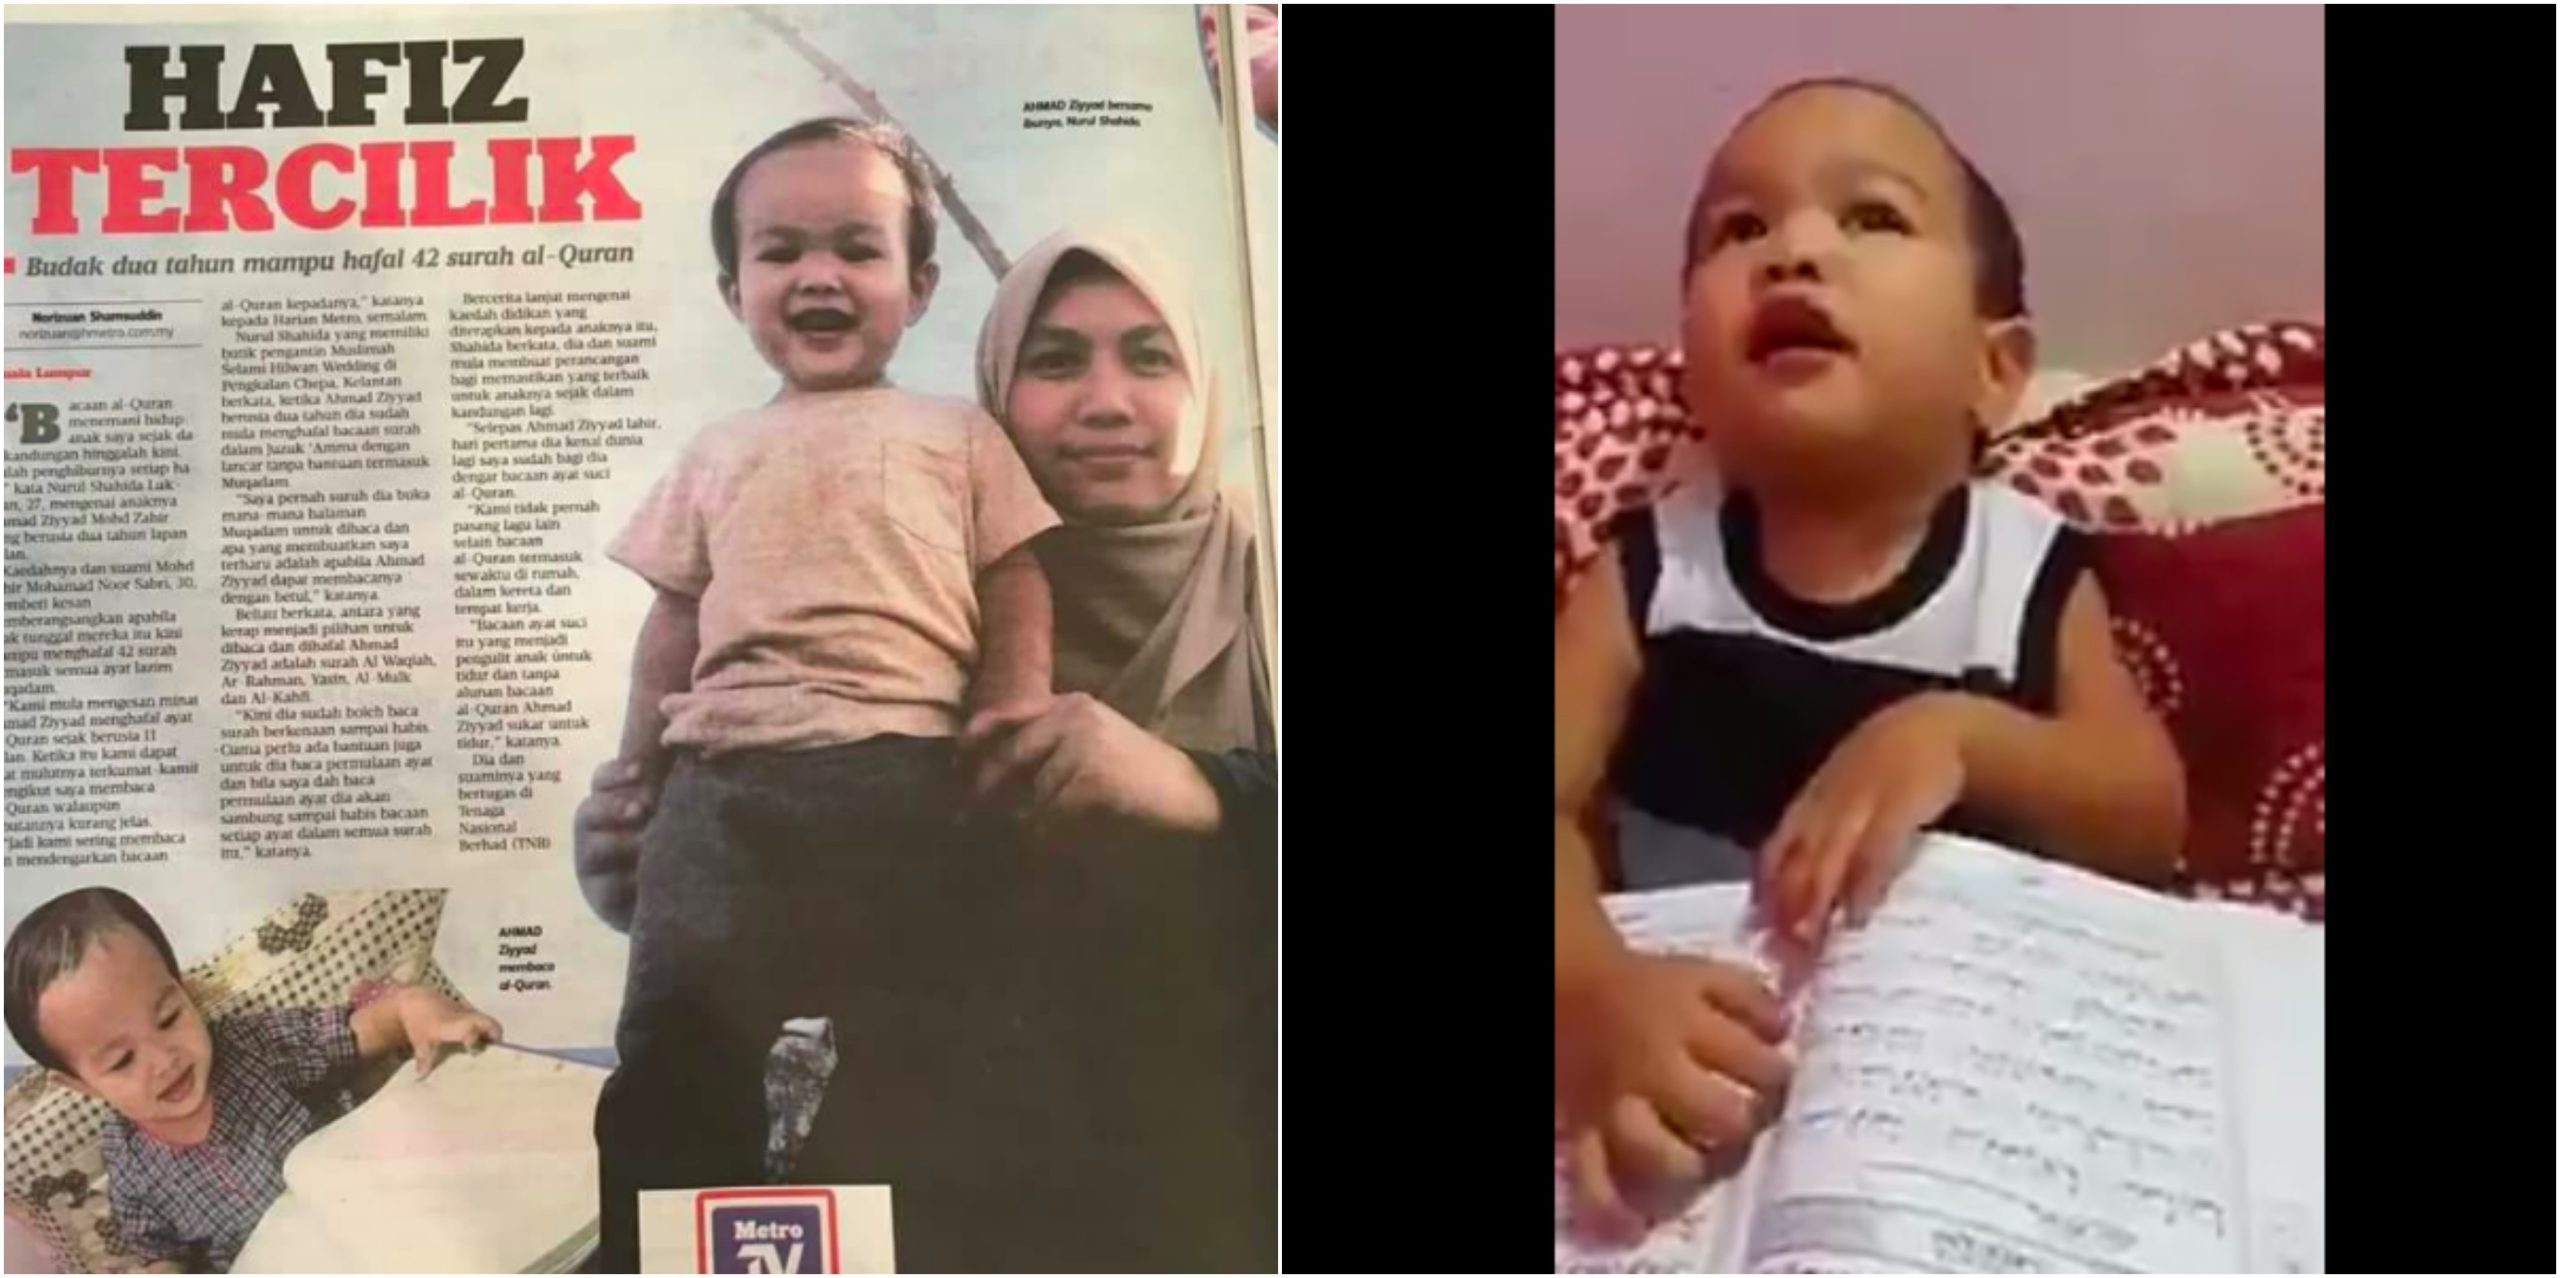 [VIDEO] Viral Budak 2 Tahun Mampu Hafal 42 Surah Al-Quran, Lihat Bacaan Surah Waqiah Darinya.. Comel!